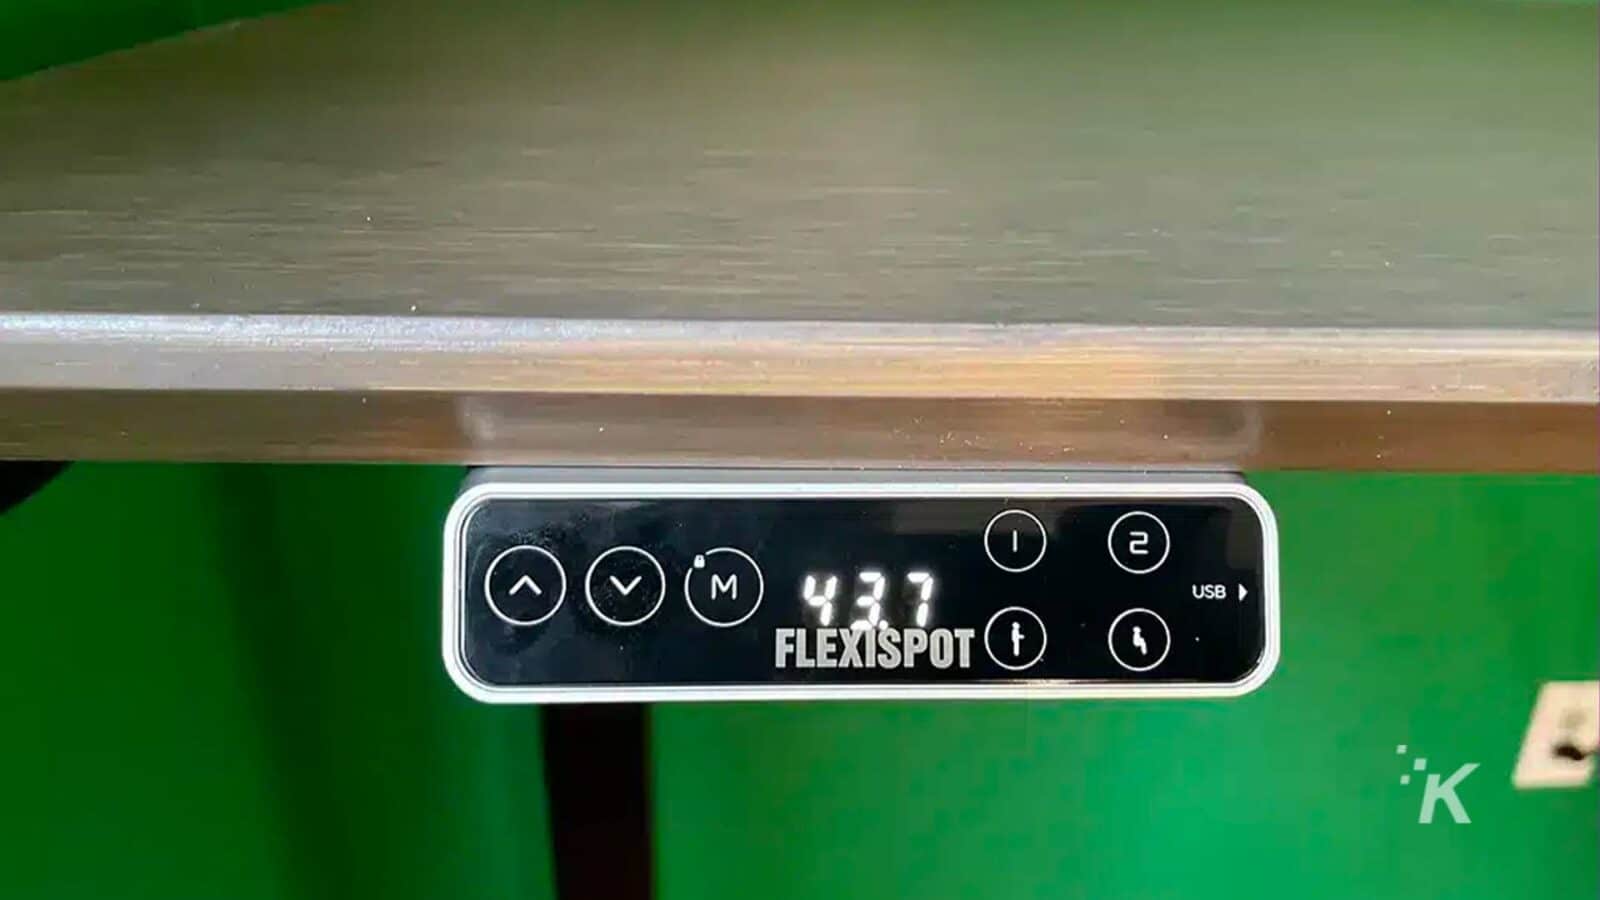 تُظهر الصورة كبل USB متصل بجهاز FlexiSpot. نص كامل: - VM) 437 2 1 USB od FLEXISPOT K